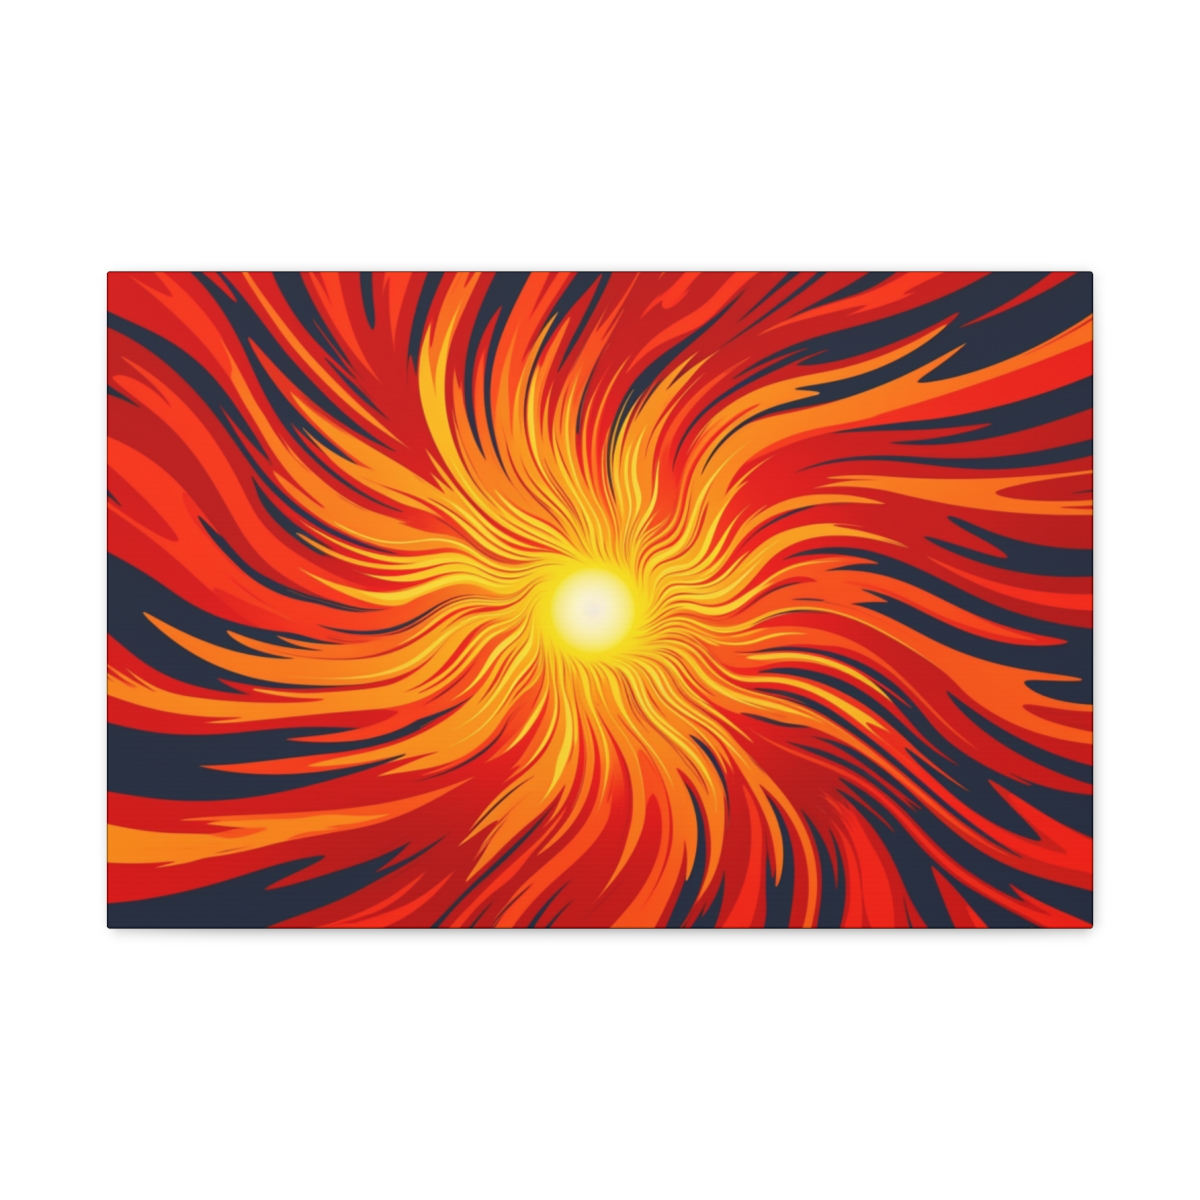 Abstract Sun Art Canvas Print: Eternal Swirl Of Fire